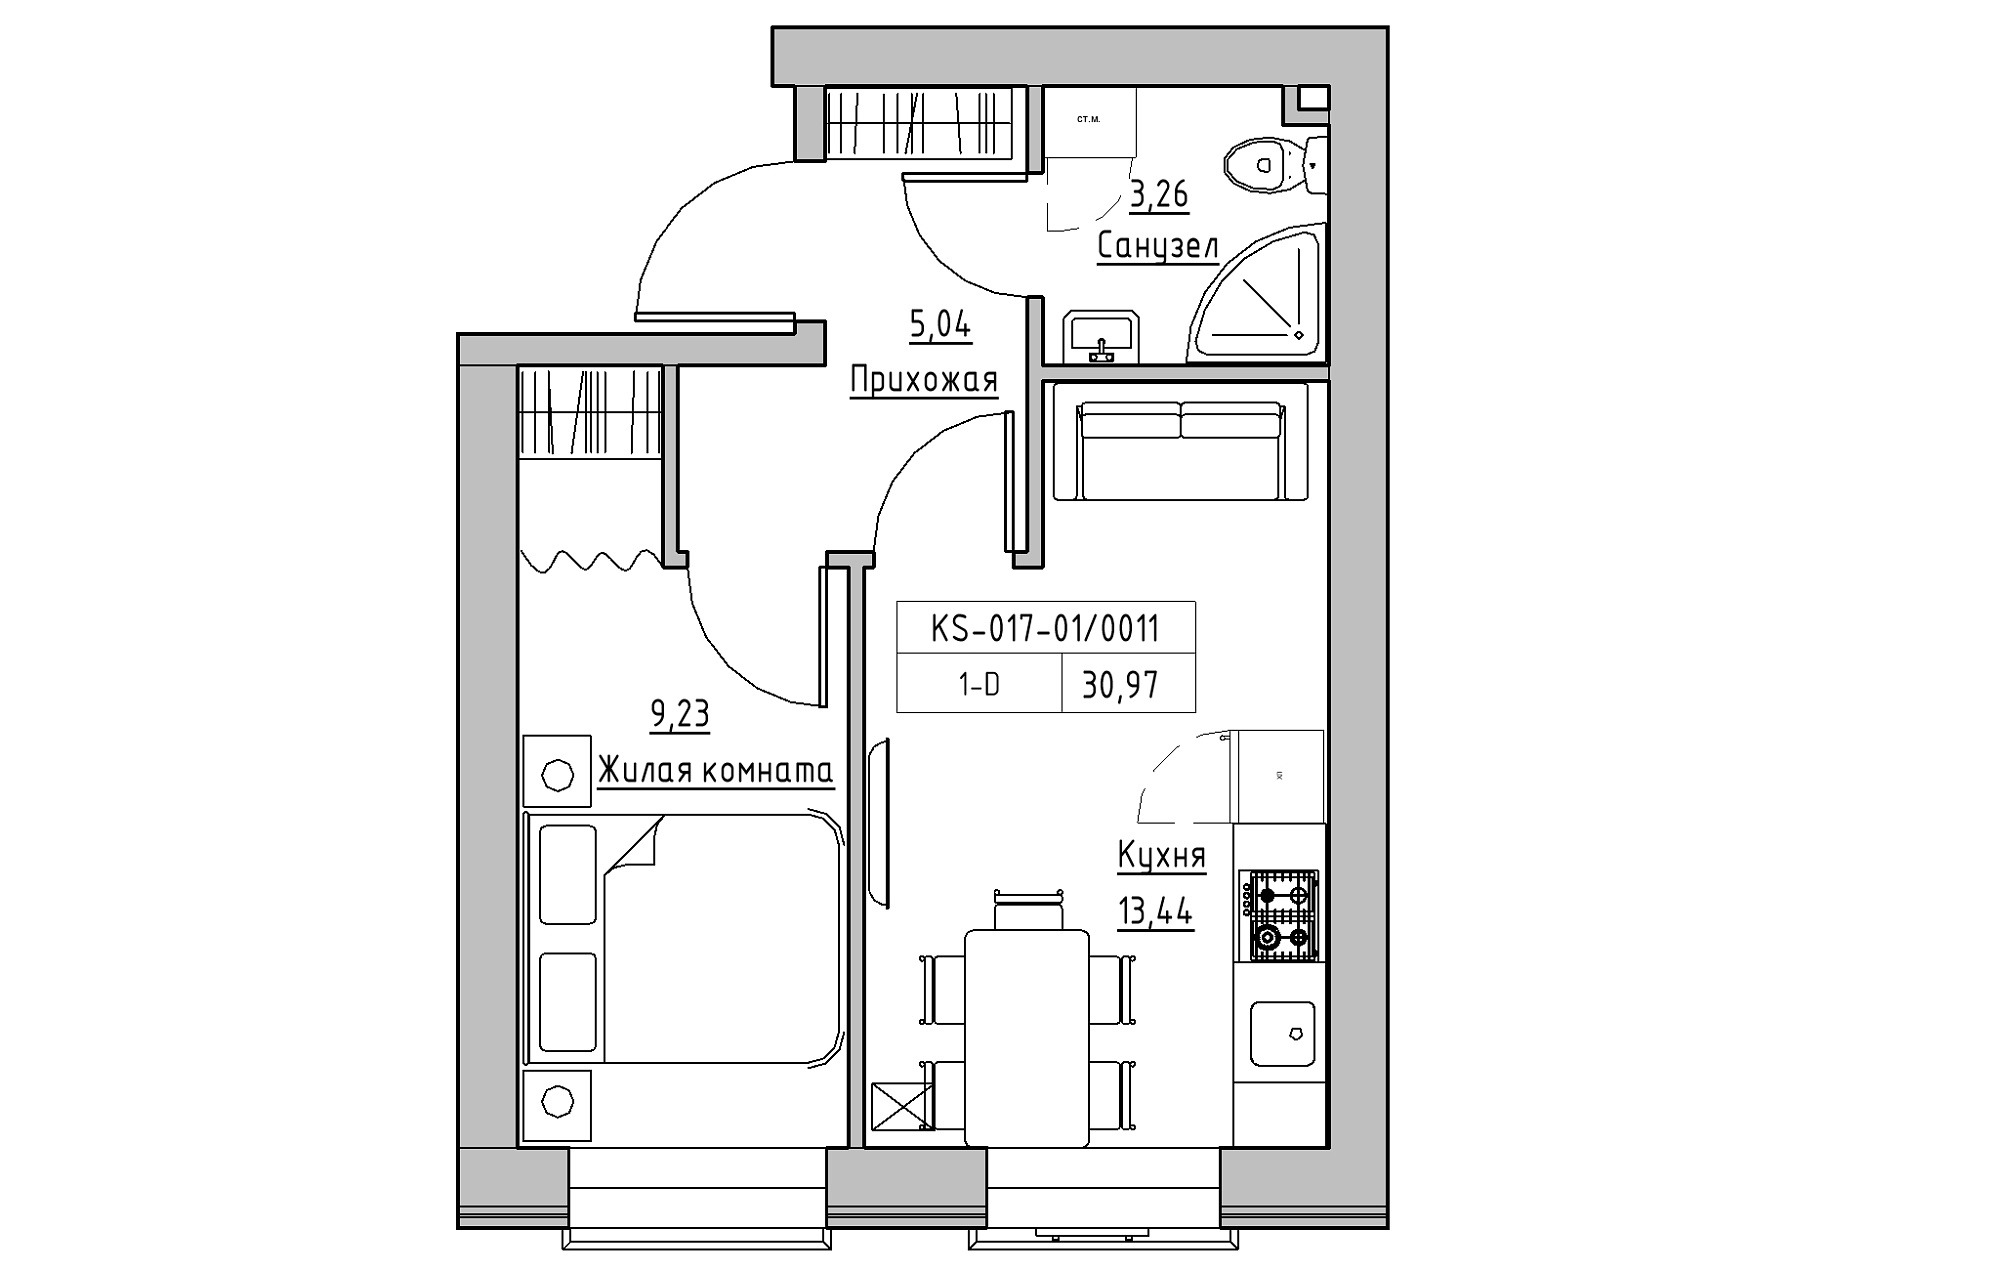 Планування 1-к квартира площею 30.97м2, KS-017-01/0011.